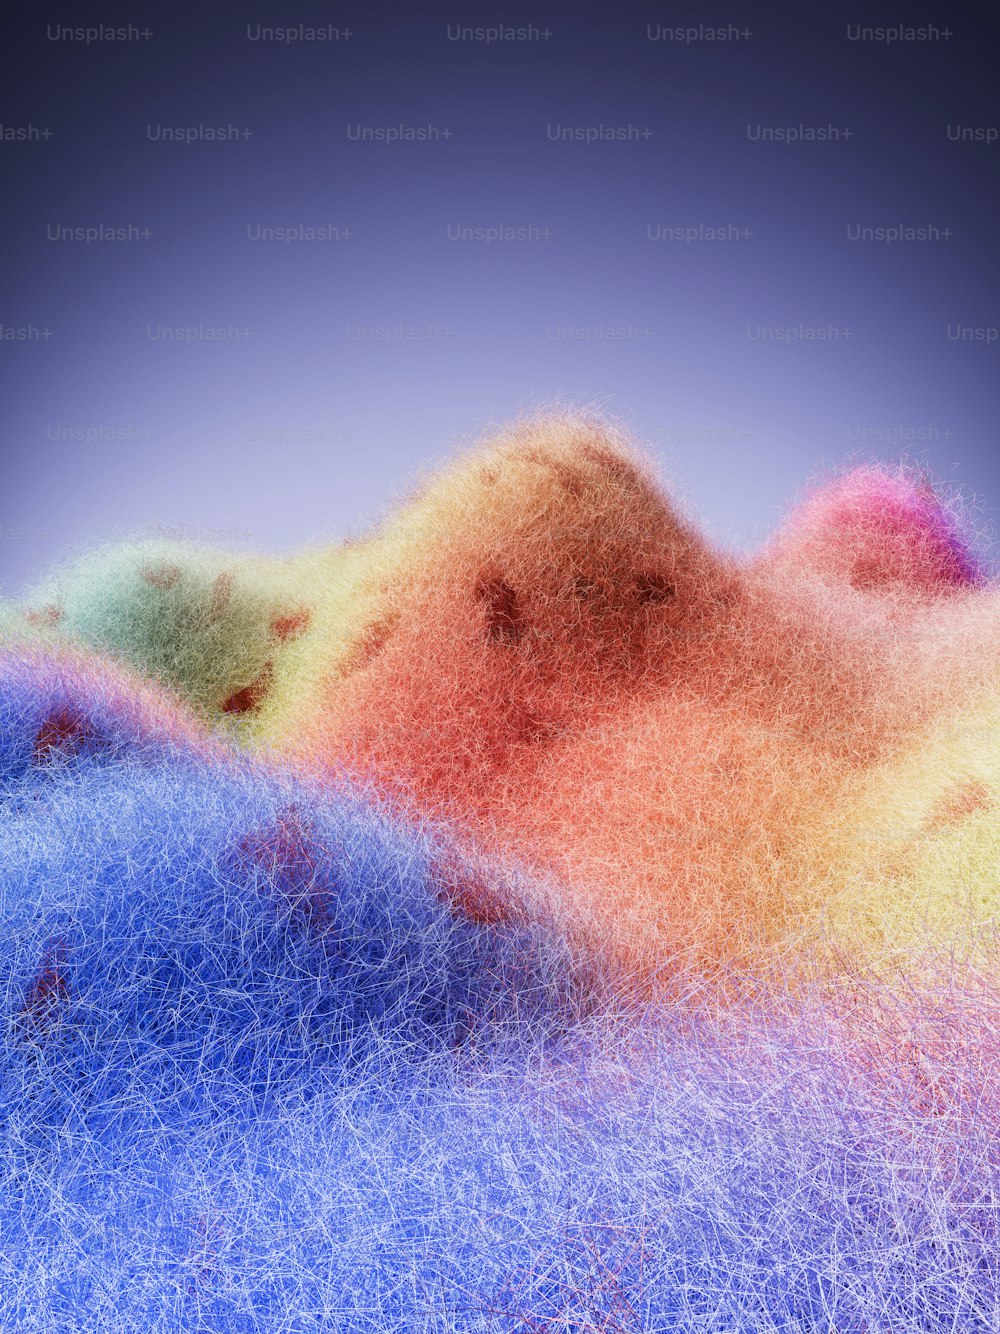 배경에 푸른 하늘이 있는 산의 여러 가지 빛깔의 이미지